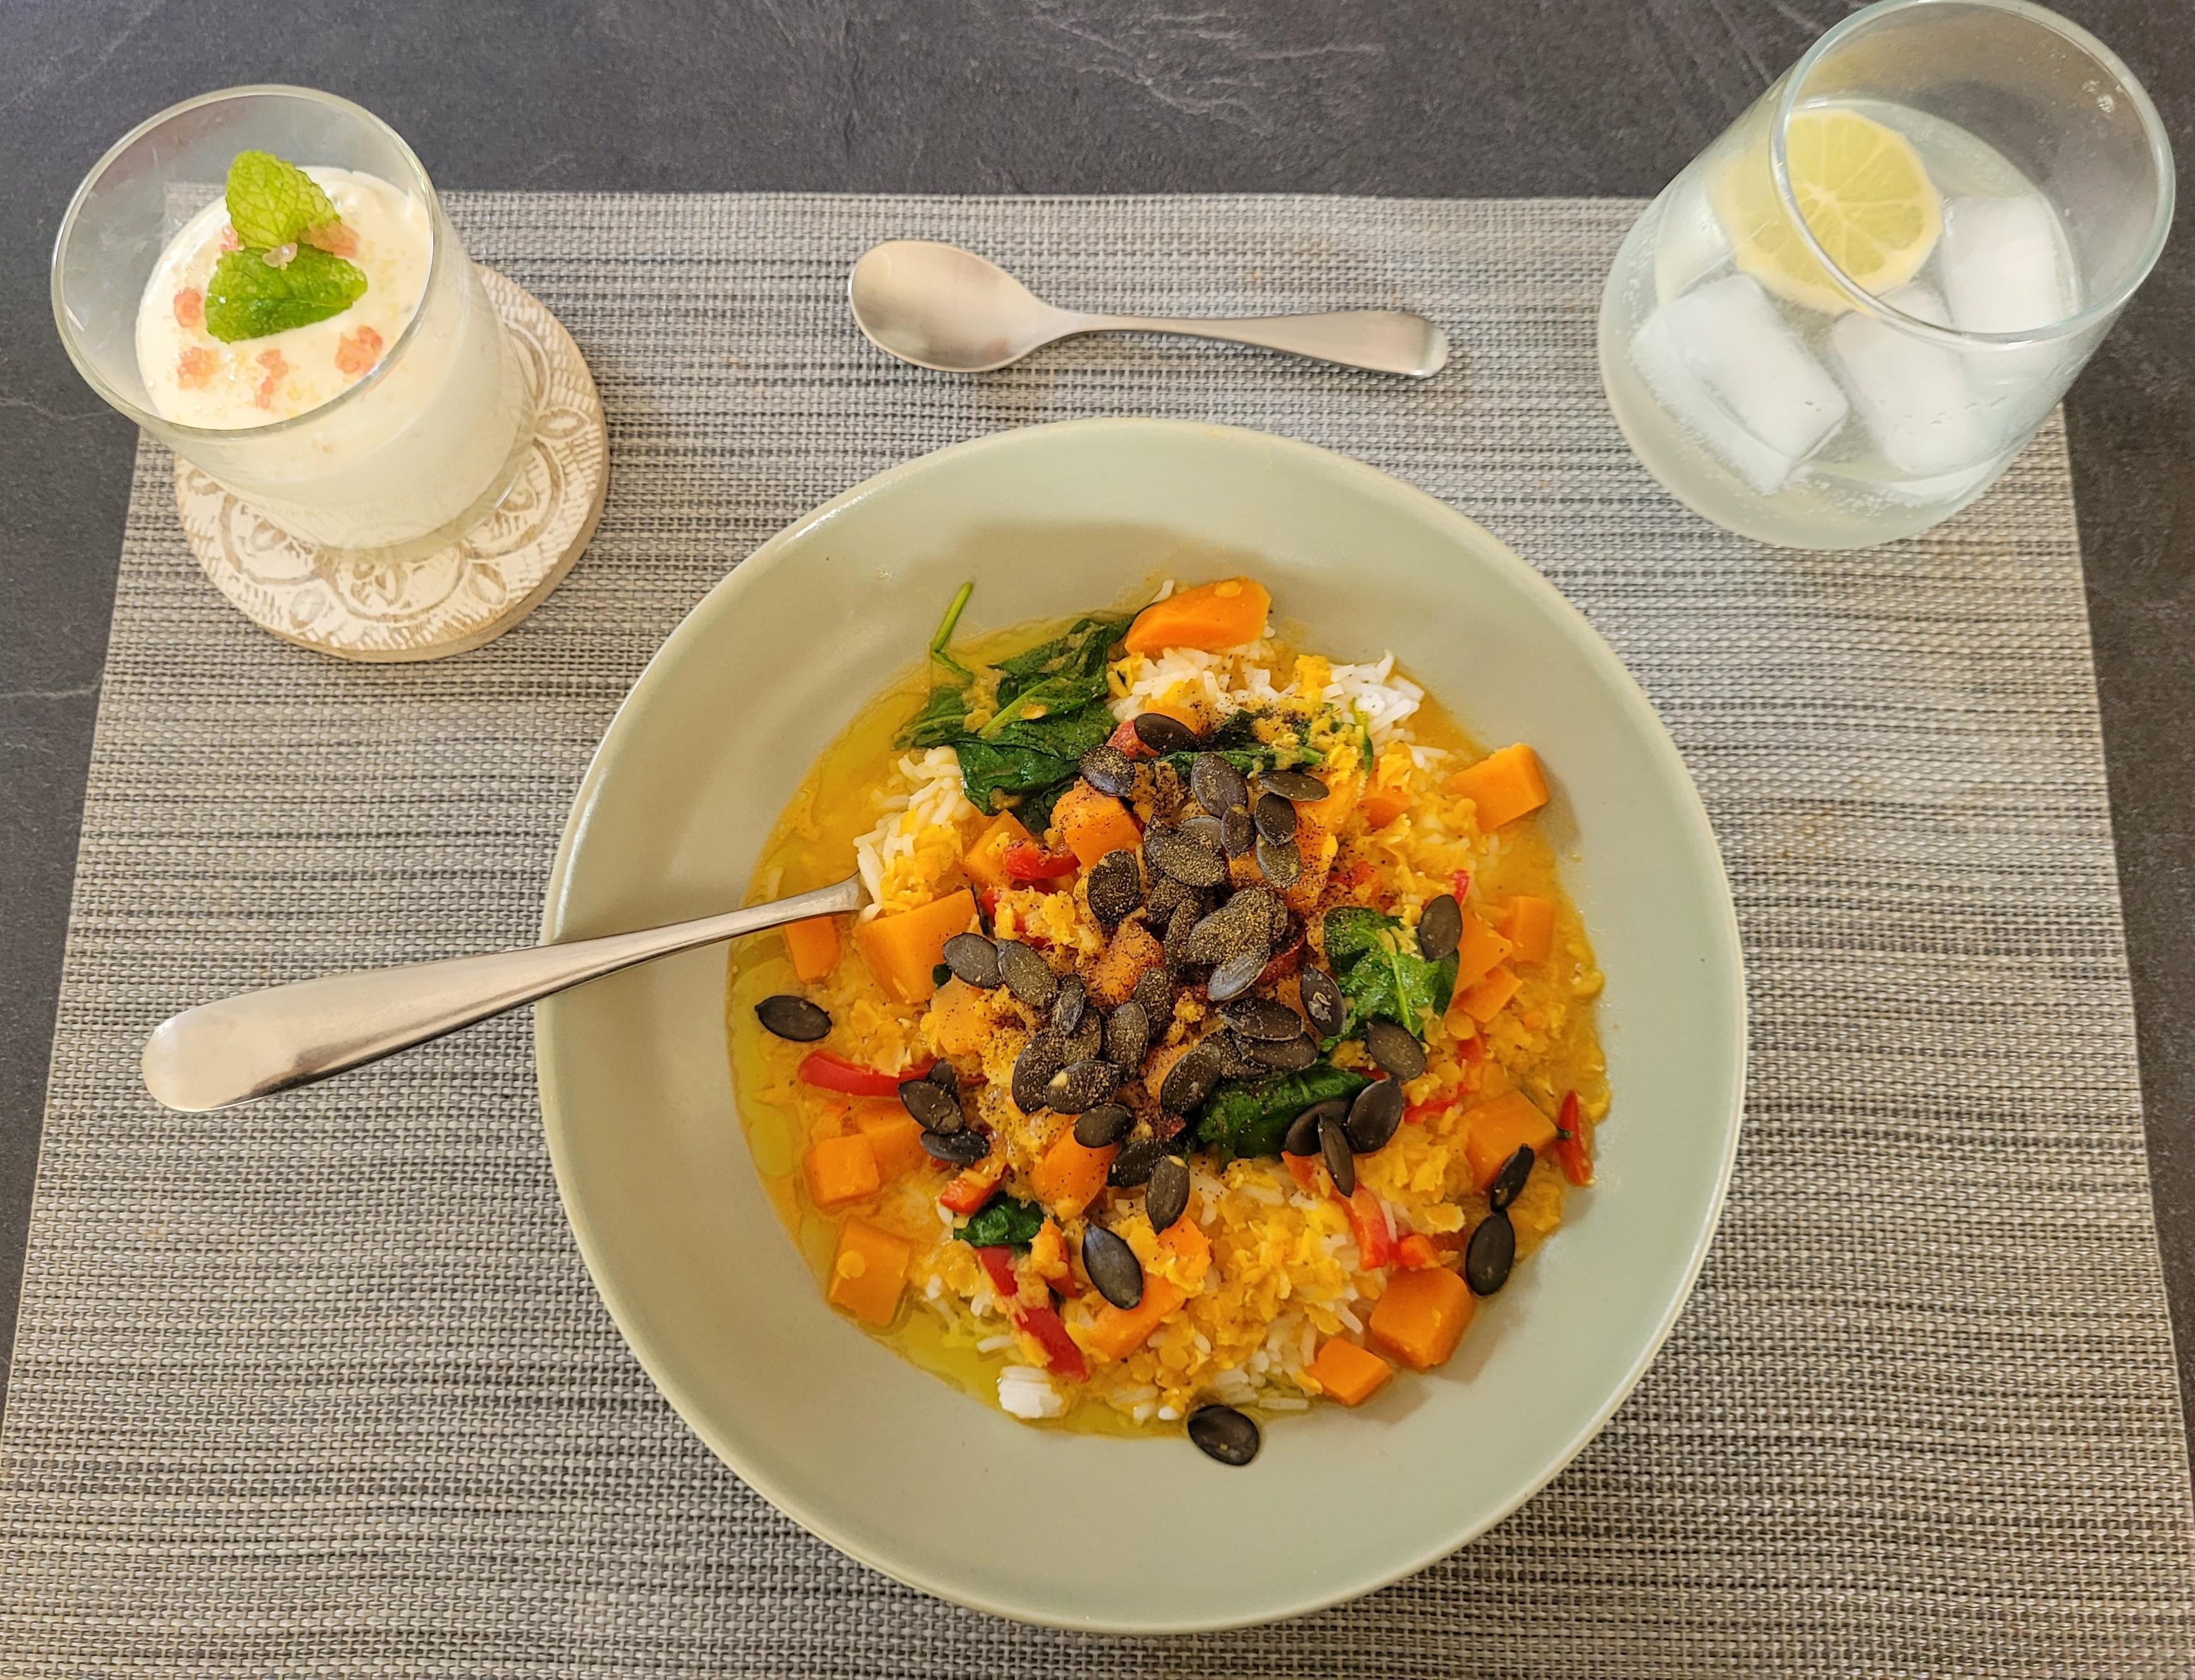 Heutiges Mittagessen und zum Nachtisch Sahne-Mascarpone mit Zitronenkaviar- sooo lecker! 😍